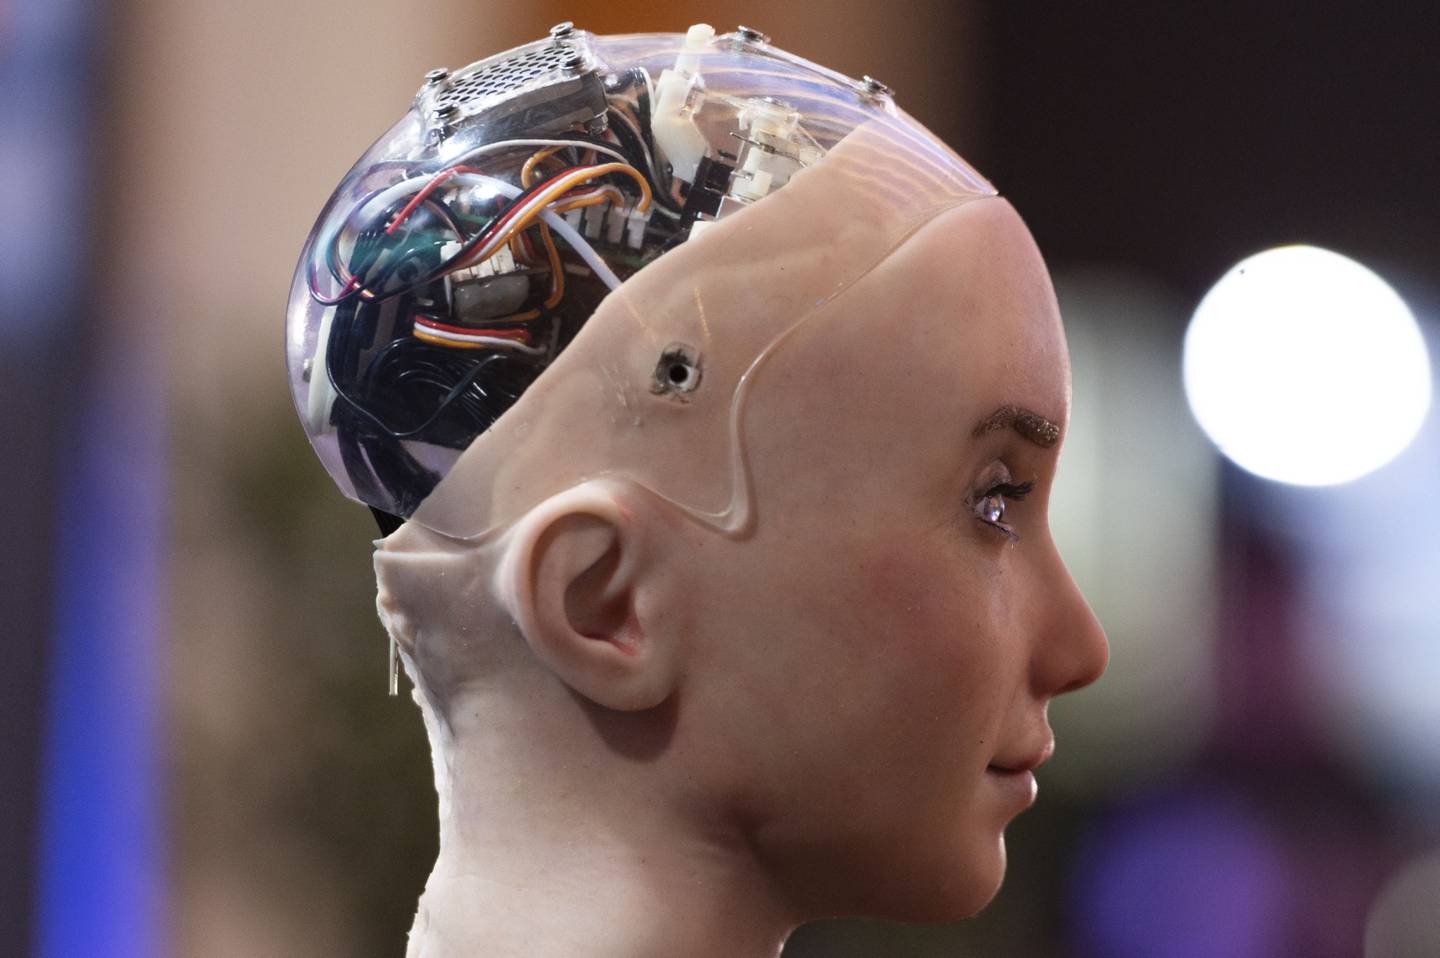 Sophia AI, robot de aspecto humano desarrollado por Hanson Robotics Inc, en TOKEN2049 en Singapur, el jueves 29 de septiembre de 2022. El evento de criptomonedas durará hasta el 29 de septiembre. Fotógrafo: Edwin Koo/Bloomberg